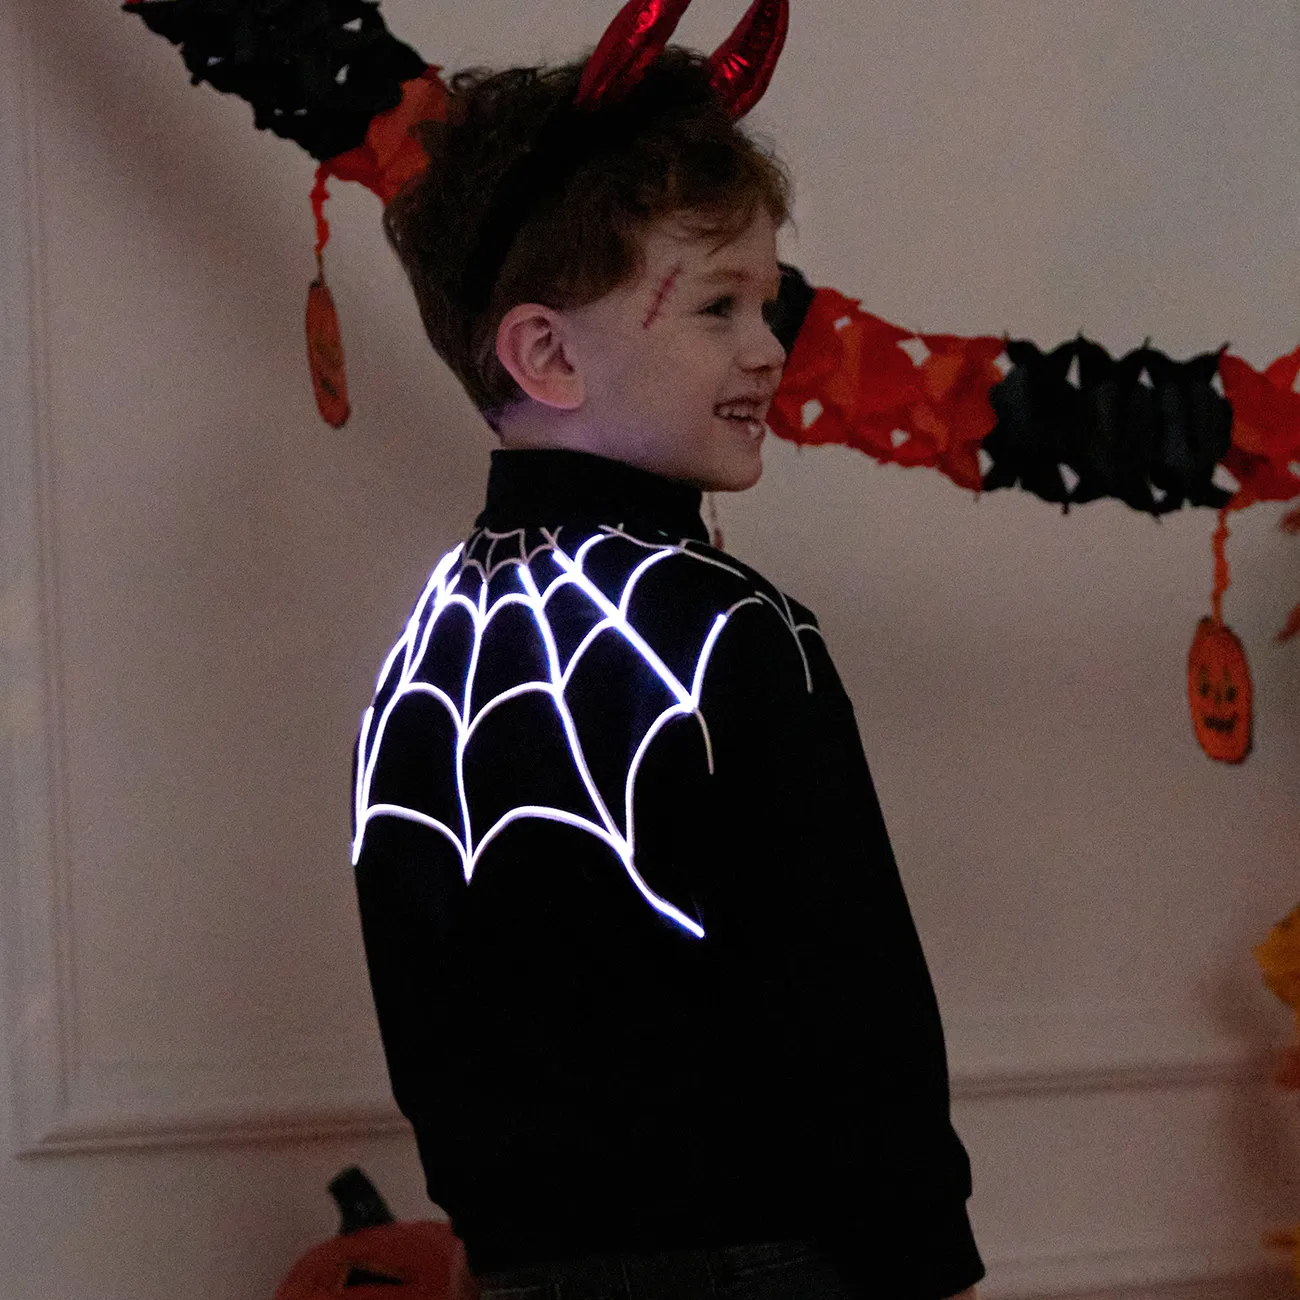 Go-Glow Leuchtjacke mit beleuchtetem, besticktem Spinnennetz inklusive Controller (eingebauter Akku) schwarz big image 1